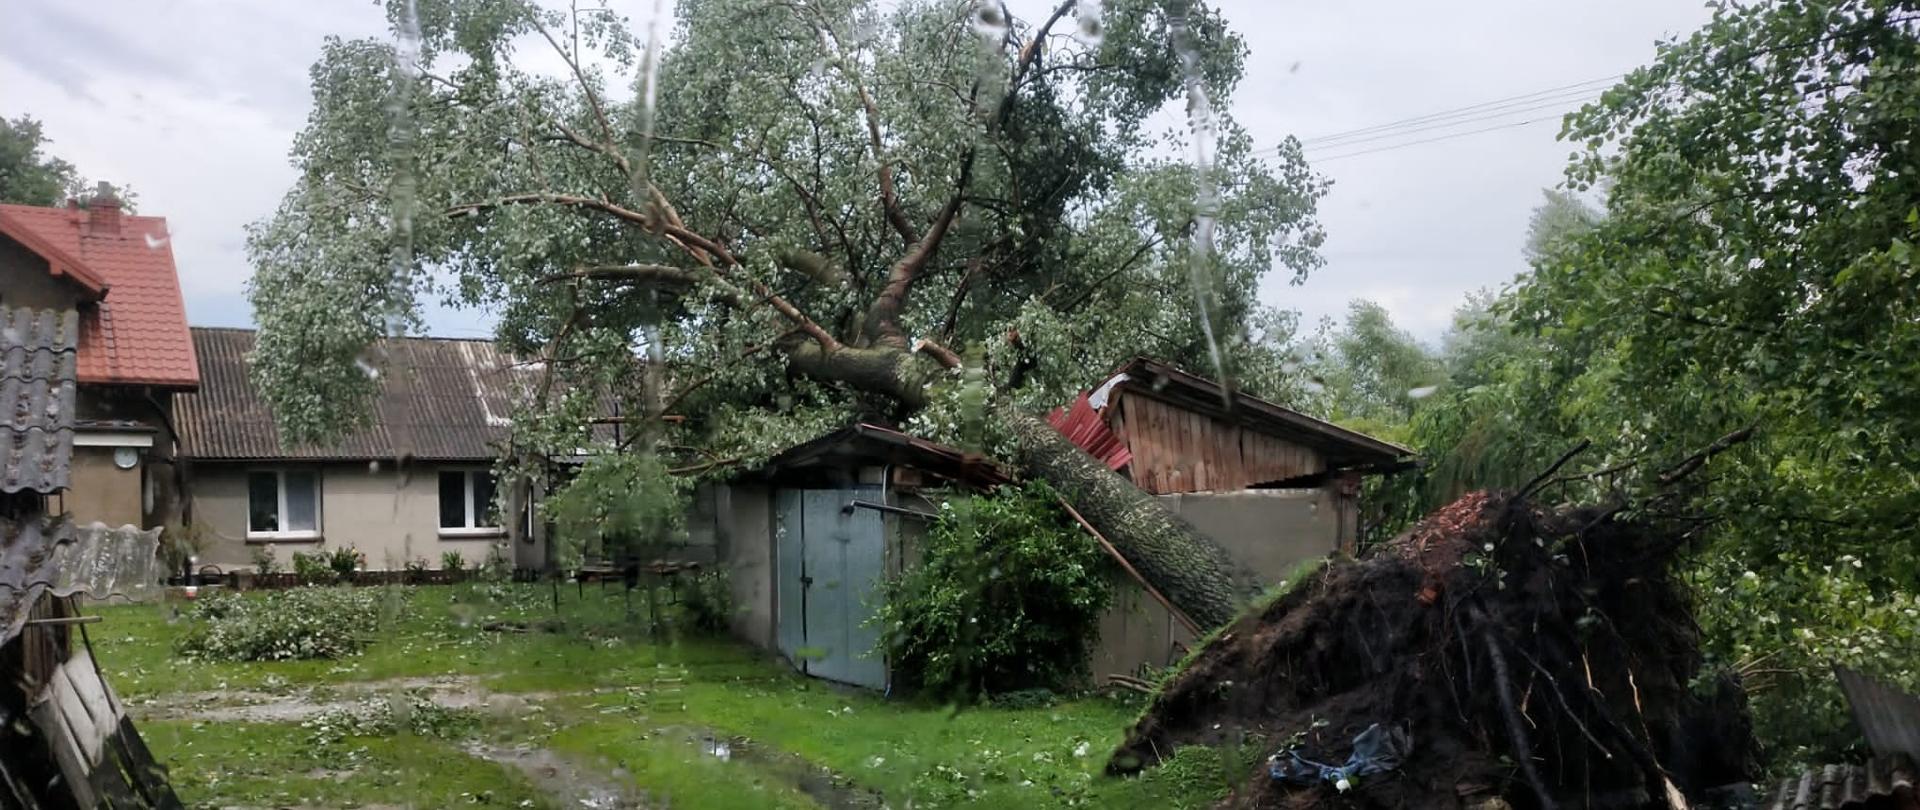 Zdjęcie przedstawia zniszczony budynek gospodarczy oraz powalone drzewo.